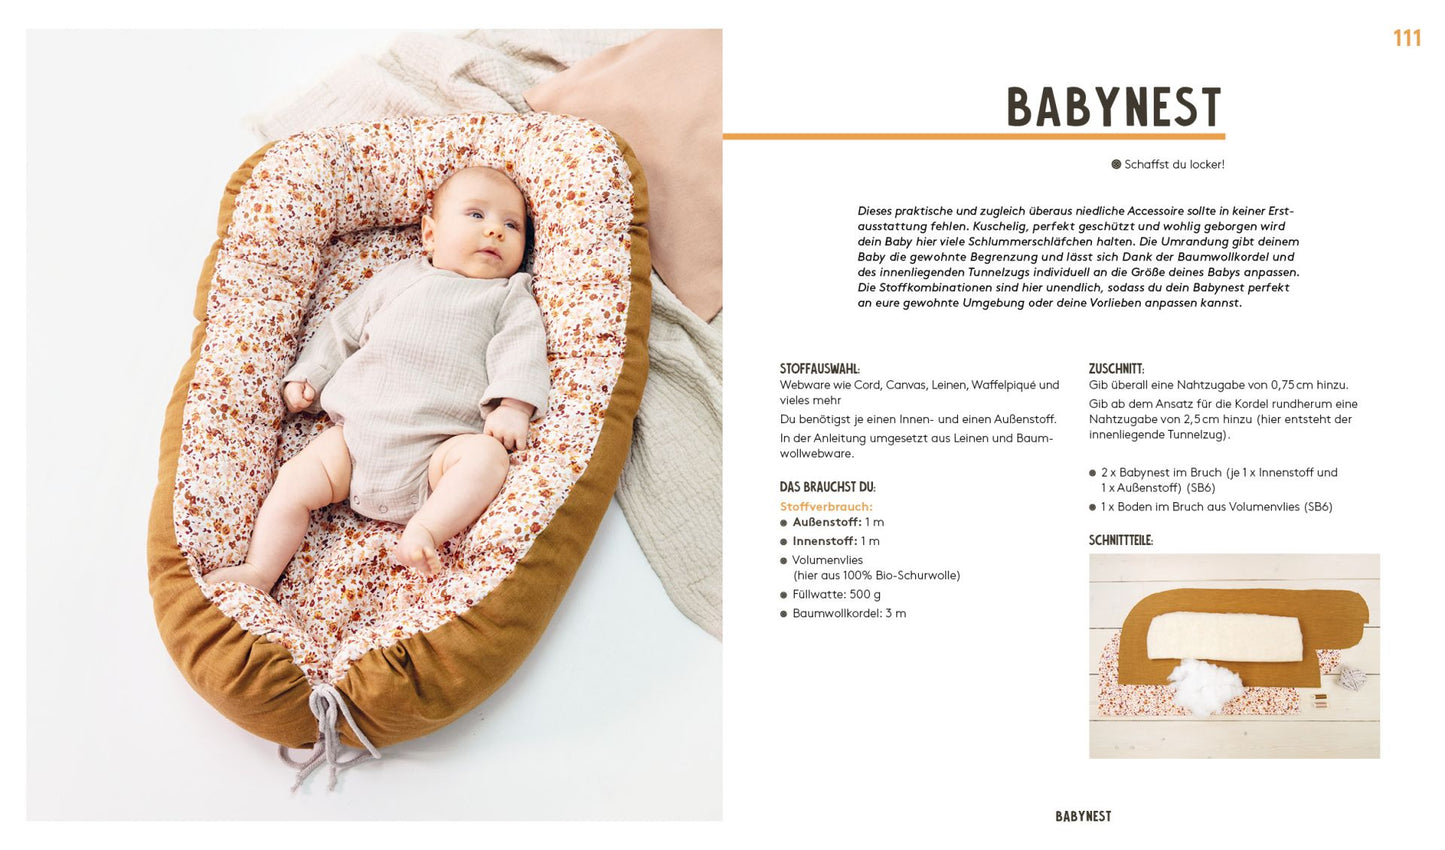 Hej. Babymode – Erstausstattung im Skandi-Look nähen - Würfel & Mütze